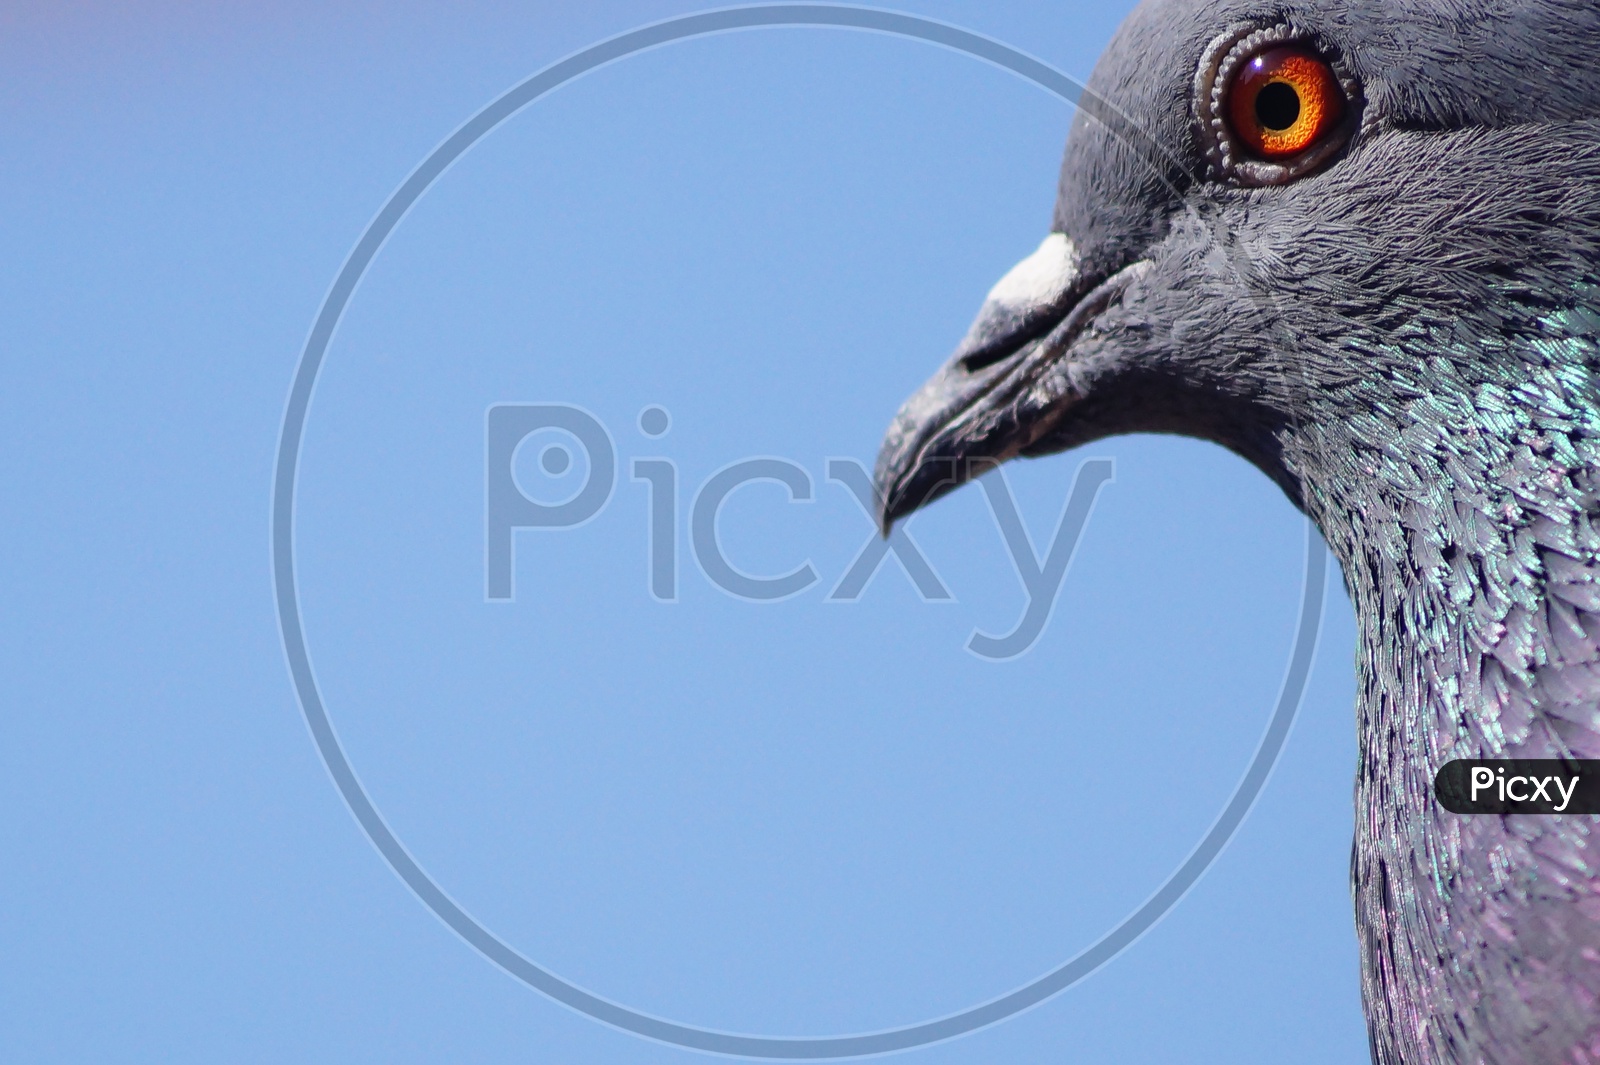 Pigeon Closeup Shot